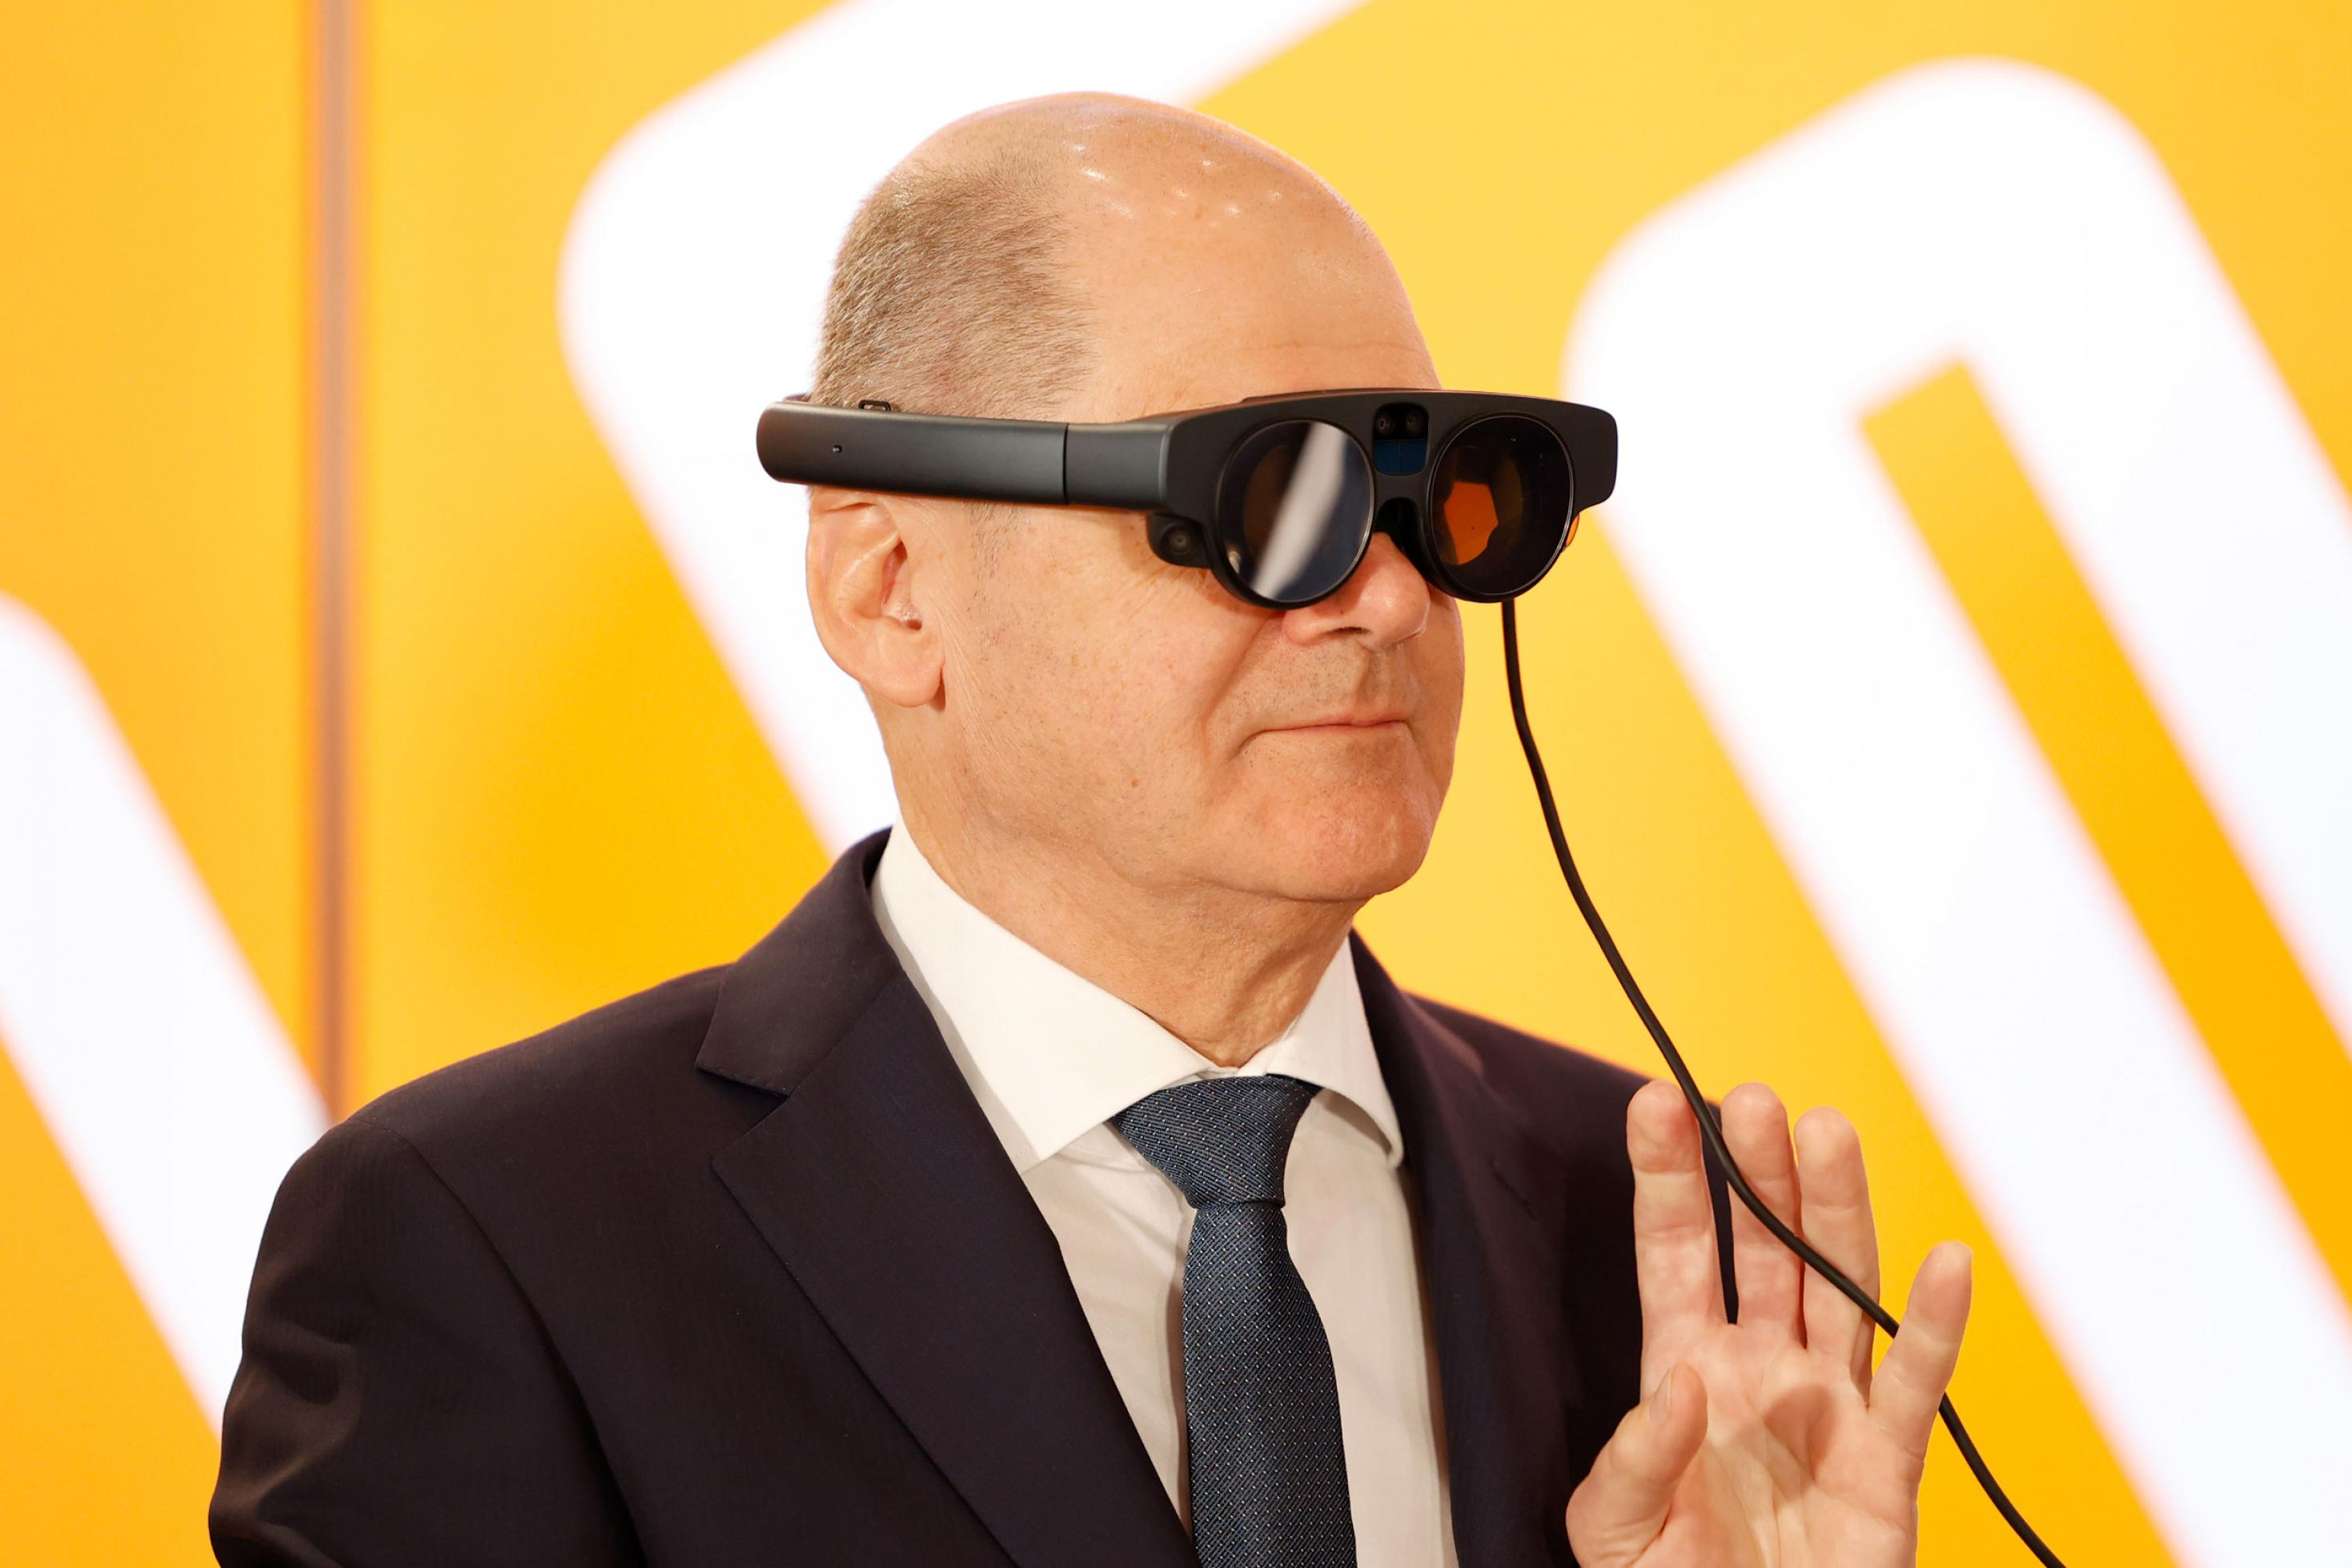 Kanzler Scholz mit VR-Brille vor gelbem Hintergrund.